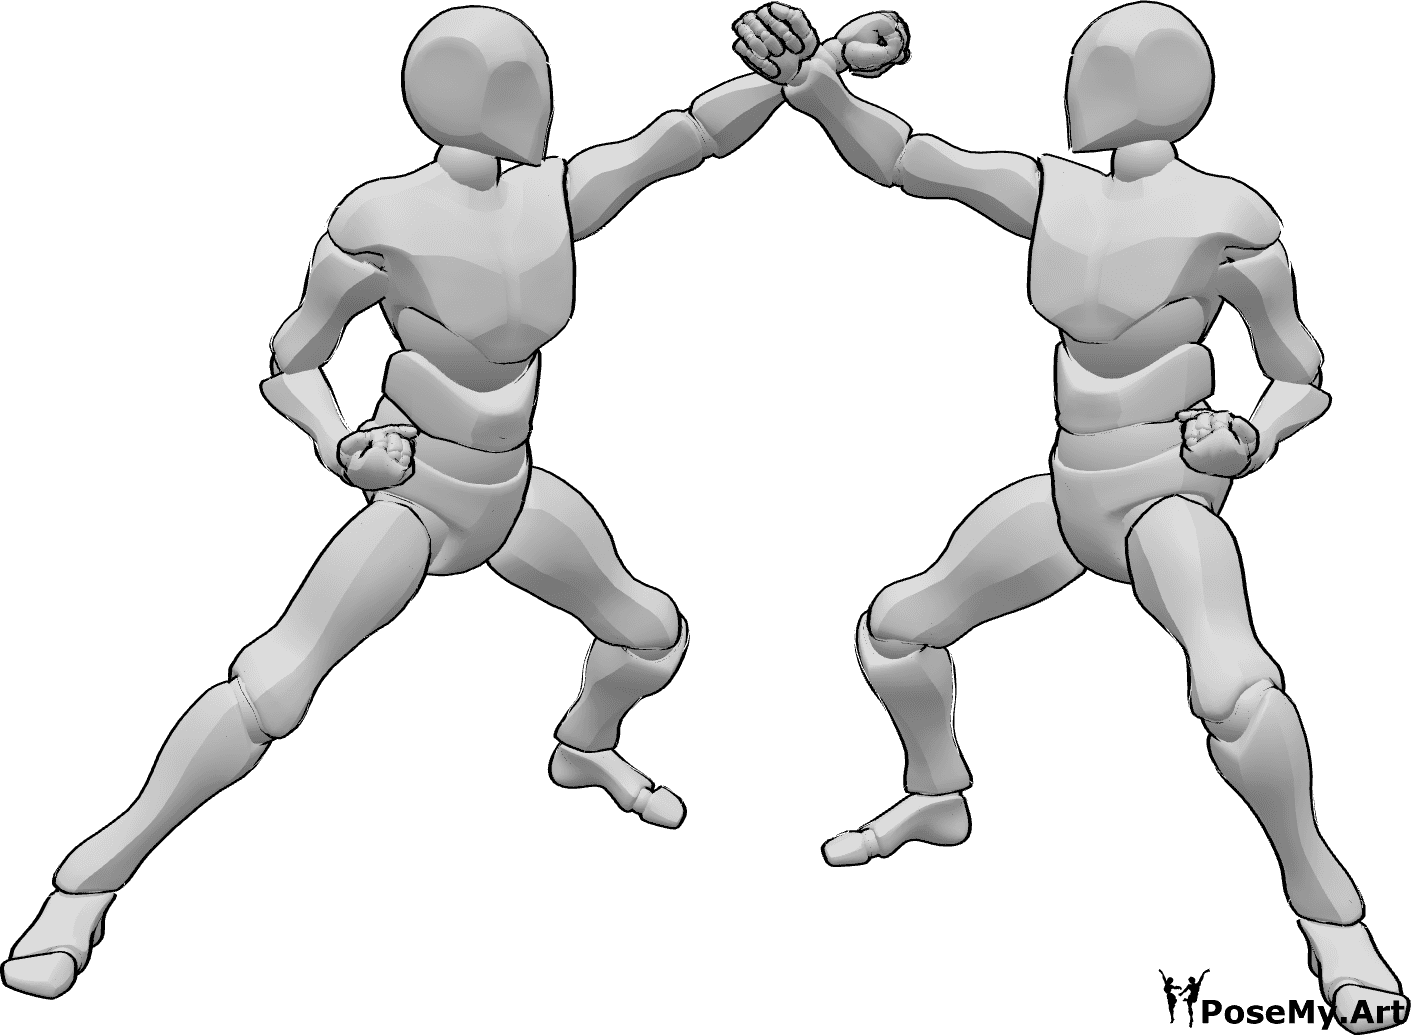 Posen-Referenz- Zwei Männer in Karate-Pose - Zwei männliche Personen kämpfen in Karate-Pose